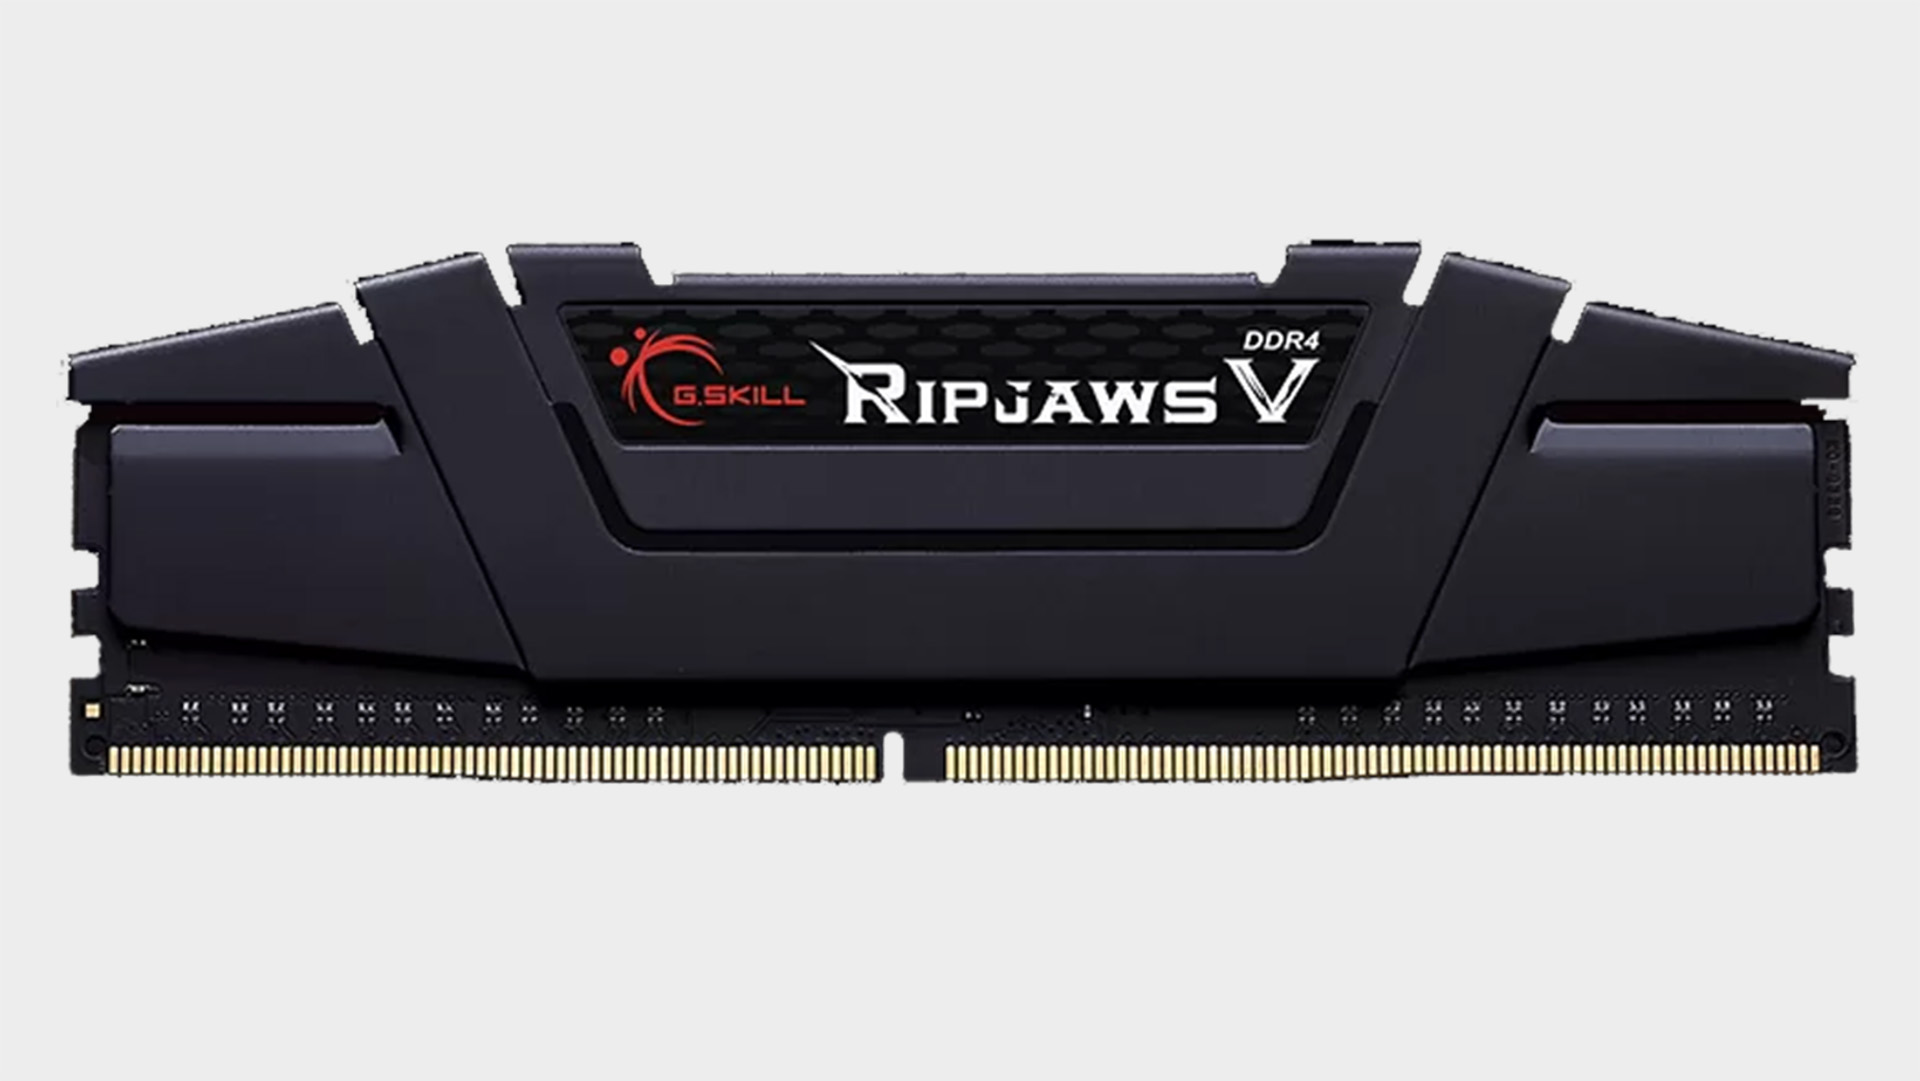 G.Skill Ripsaw V DDR4 RAM on a grey background